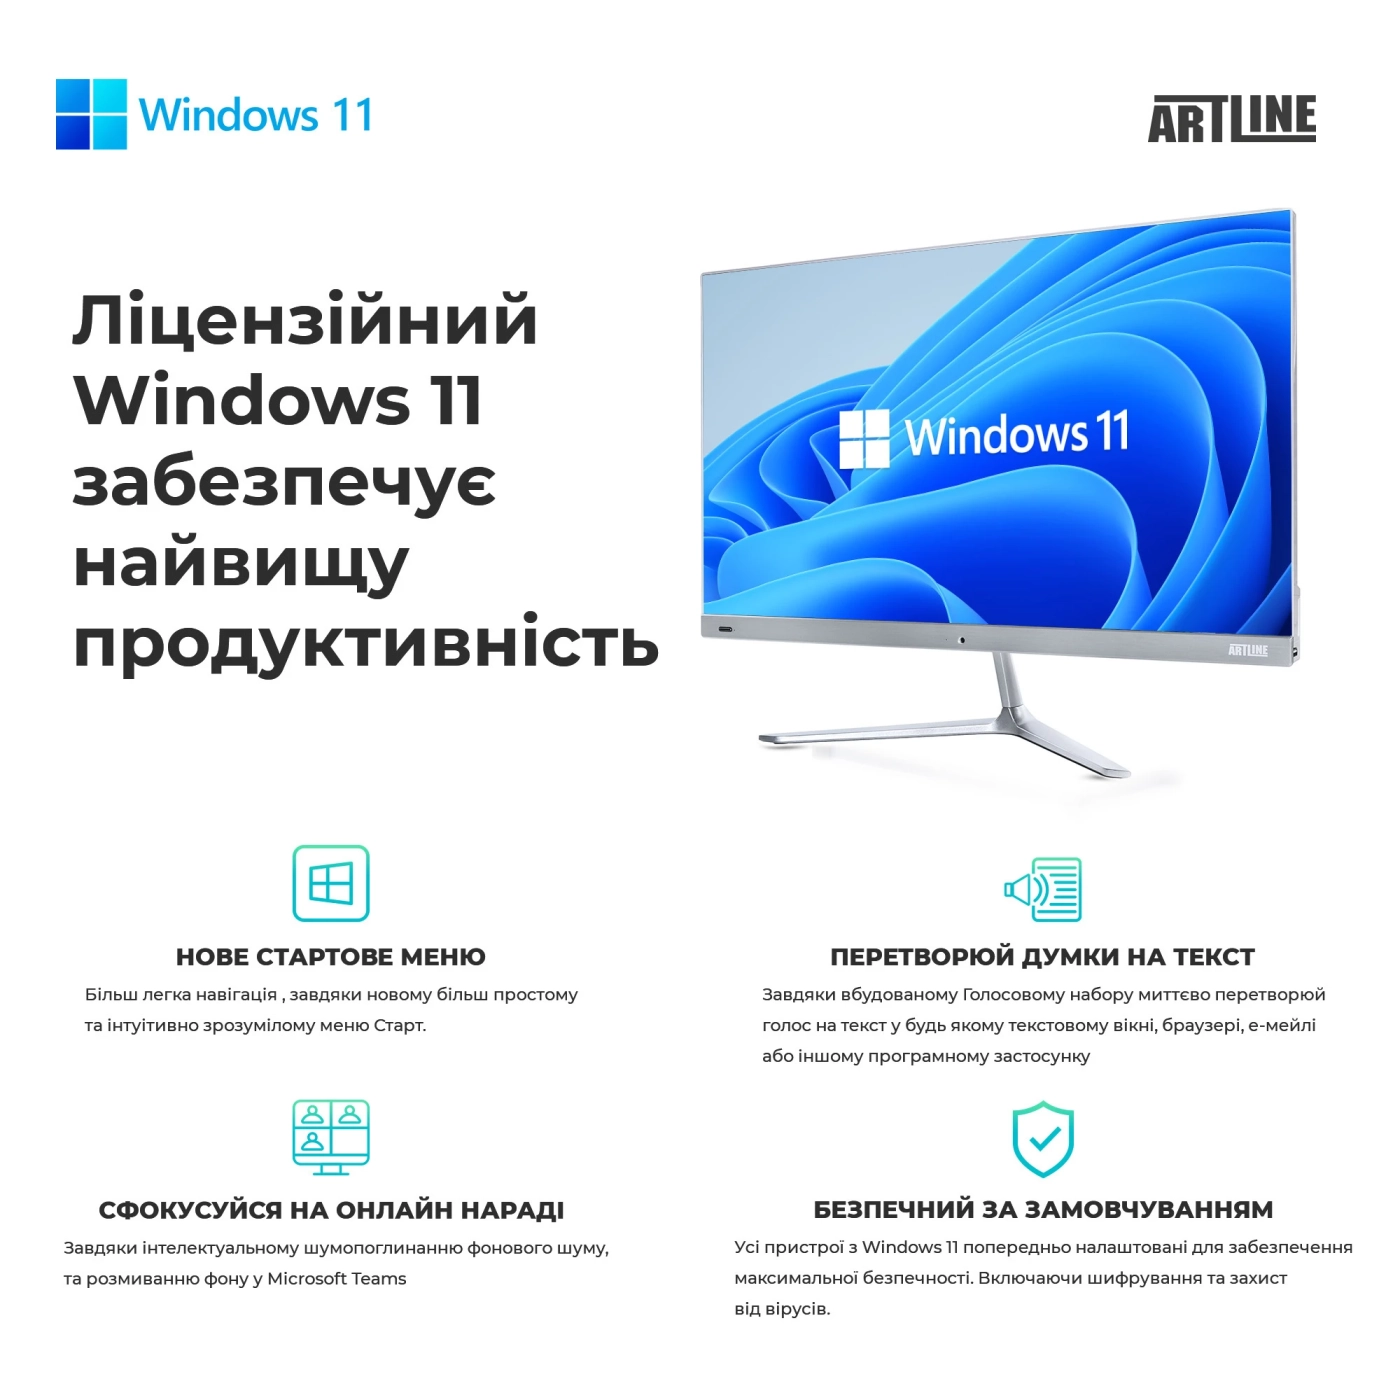 Купить Рабочая станция ARTLINE WorkStation W79 Windows 11 Pro (W79v23Win) - фото 10